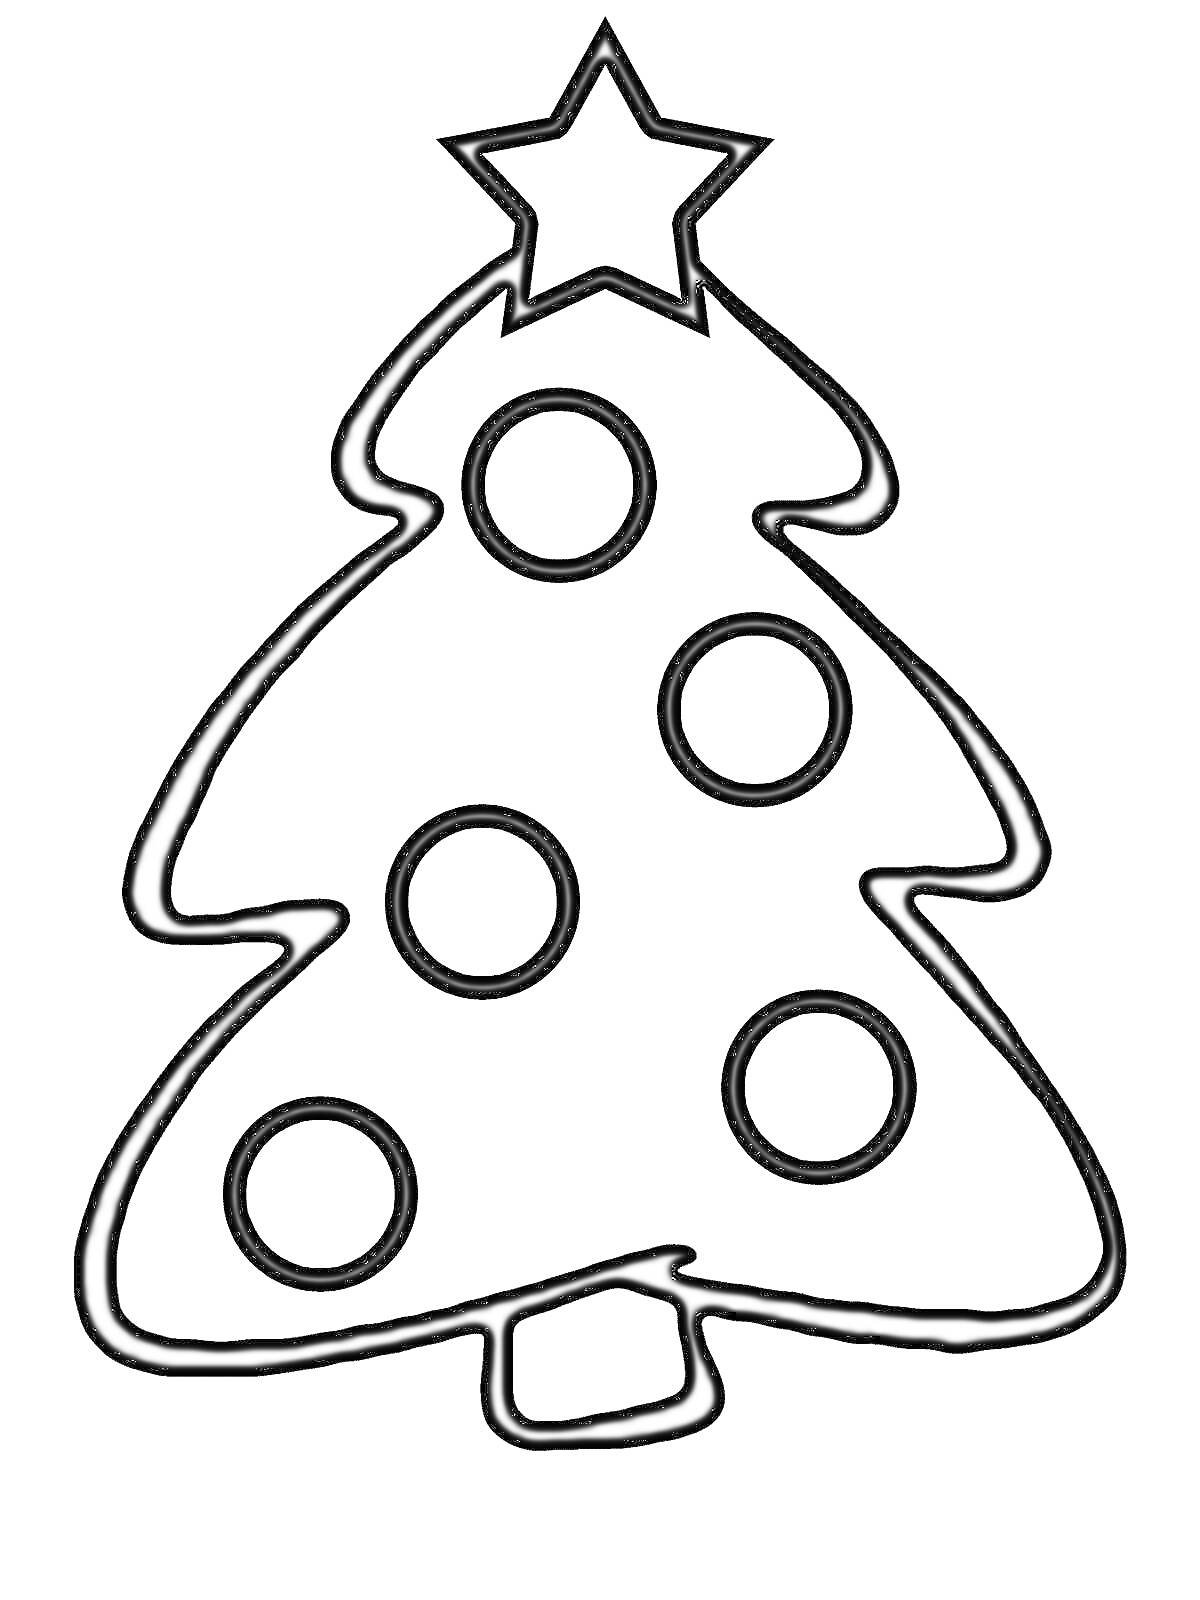 Раскраска елка с пятью круглыми игрушками и звездой на верхушке